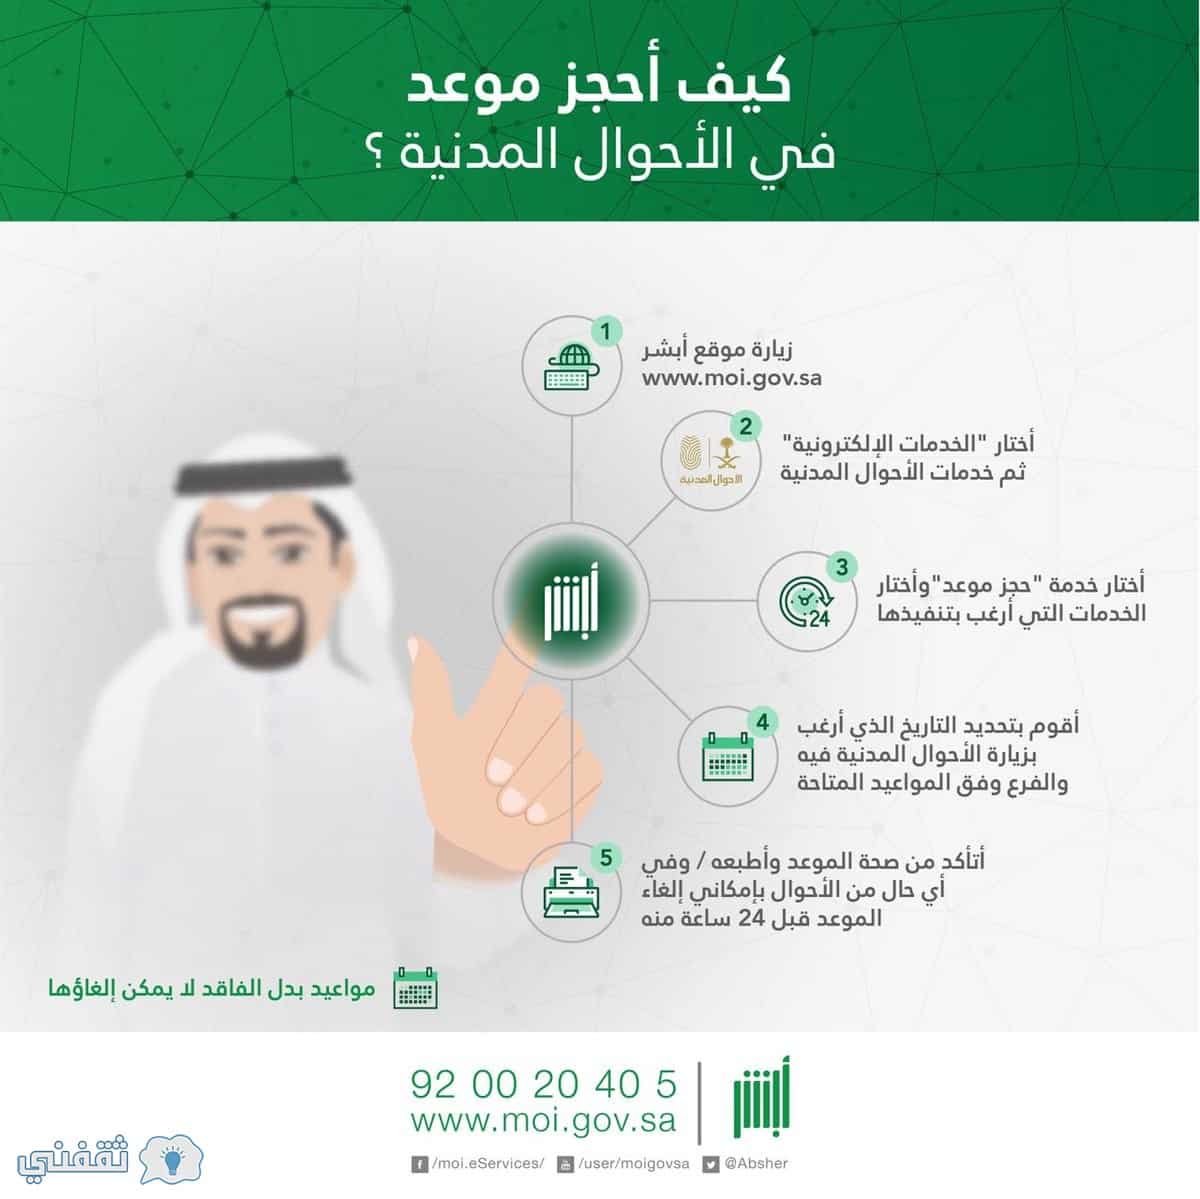 حجز موعد في الاحوال المدنية بوابة أبشر الخدمات الإلكترونية وزارة الداخلية السعودية ثقفني